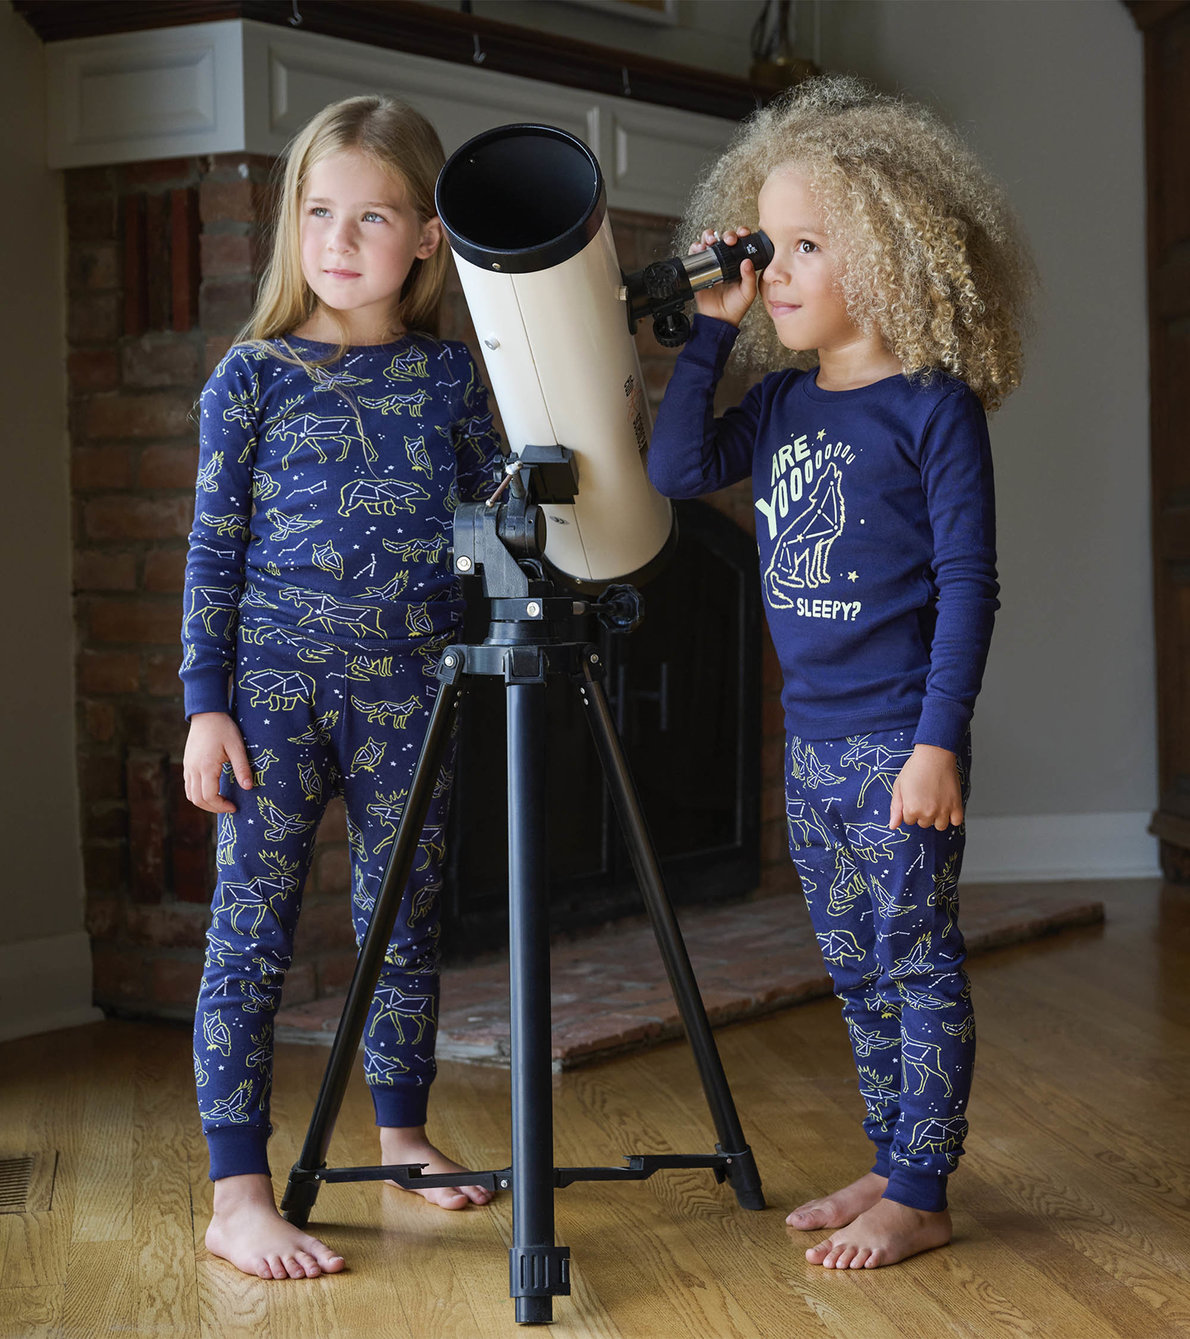 View larger image of Animal Constellations Kids Pajama Set